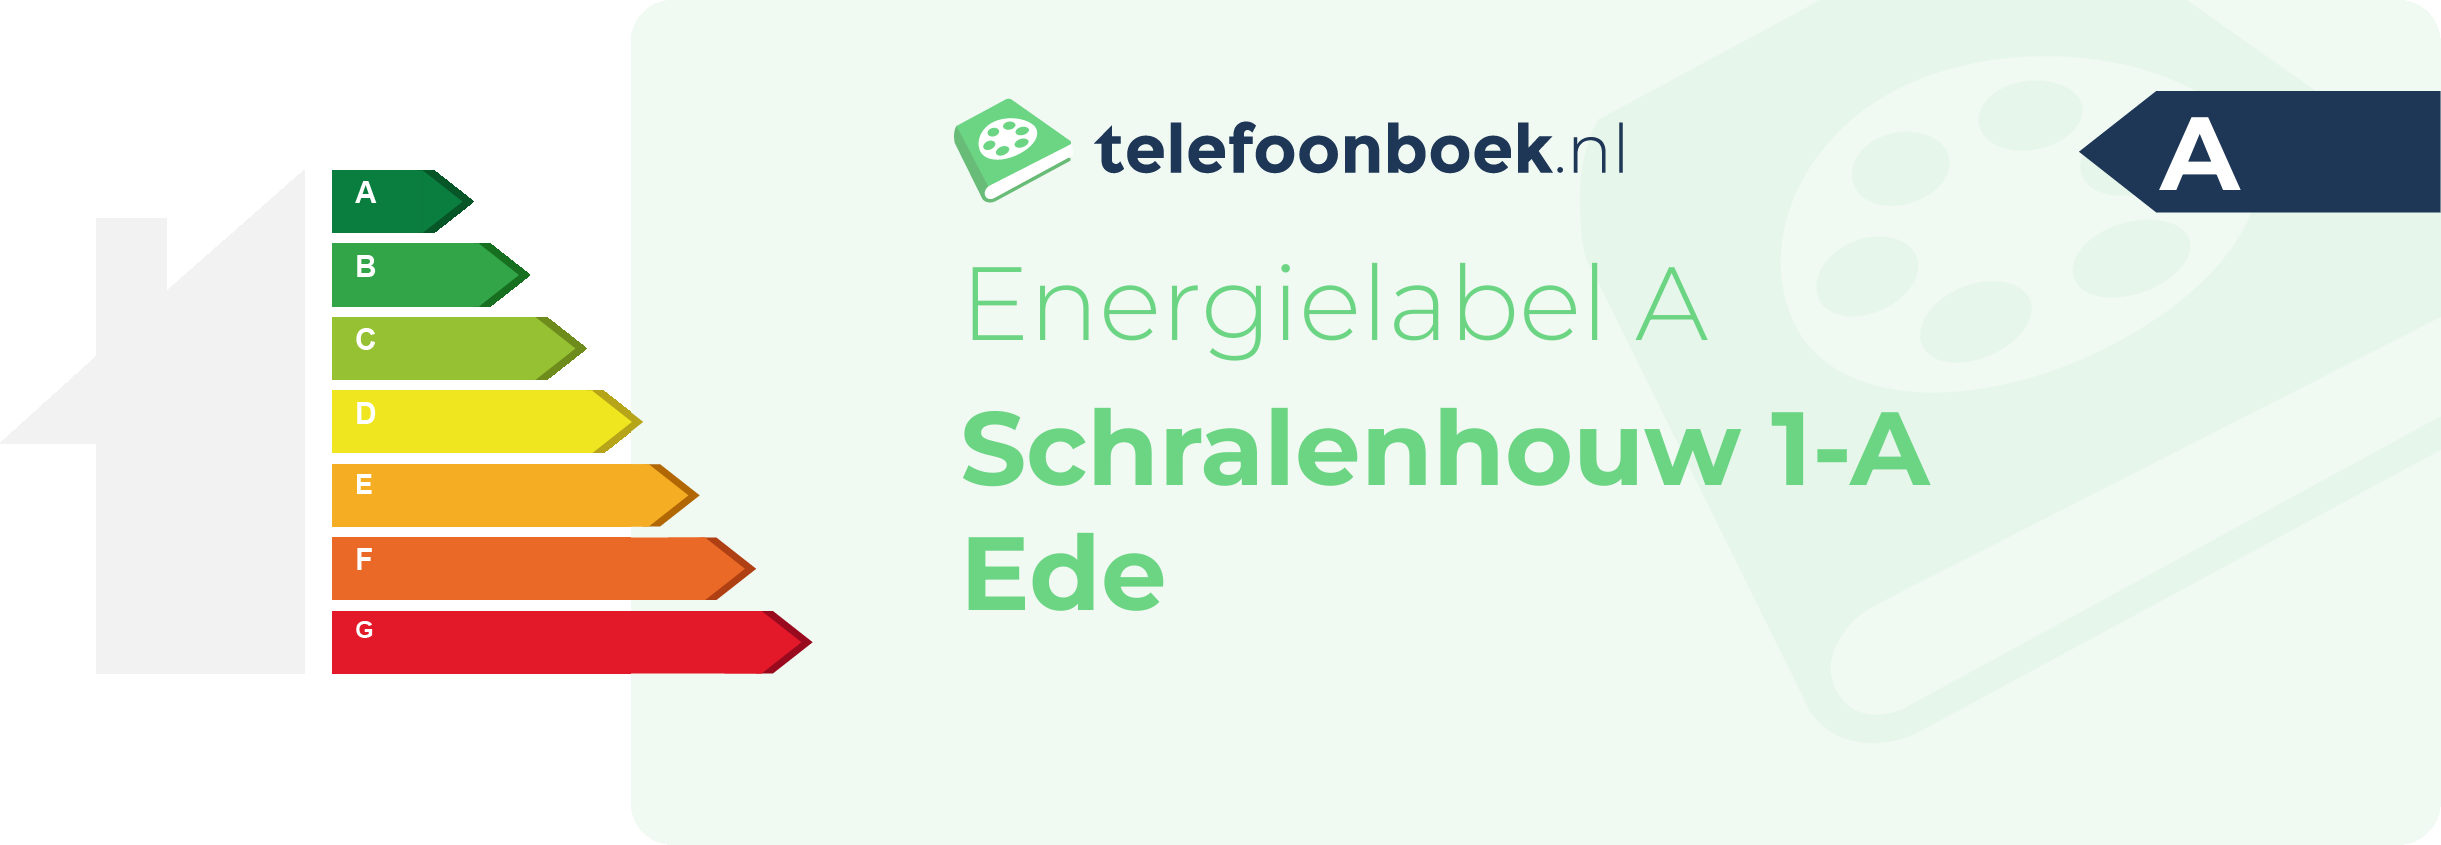 Energielabel Schralenhouw 1-A Ede